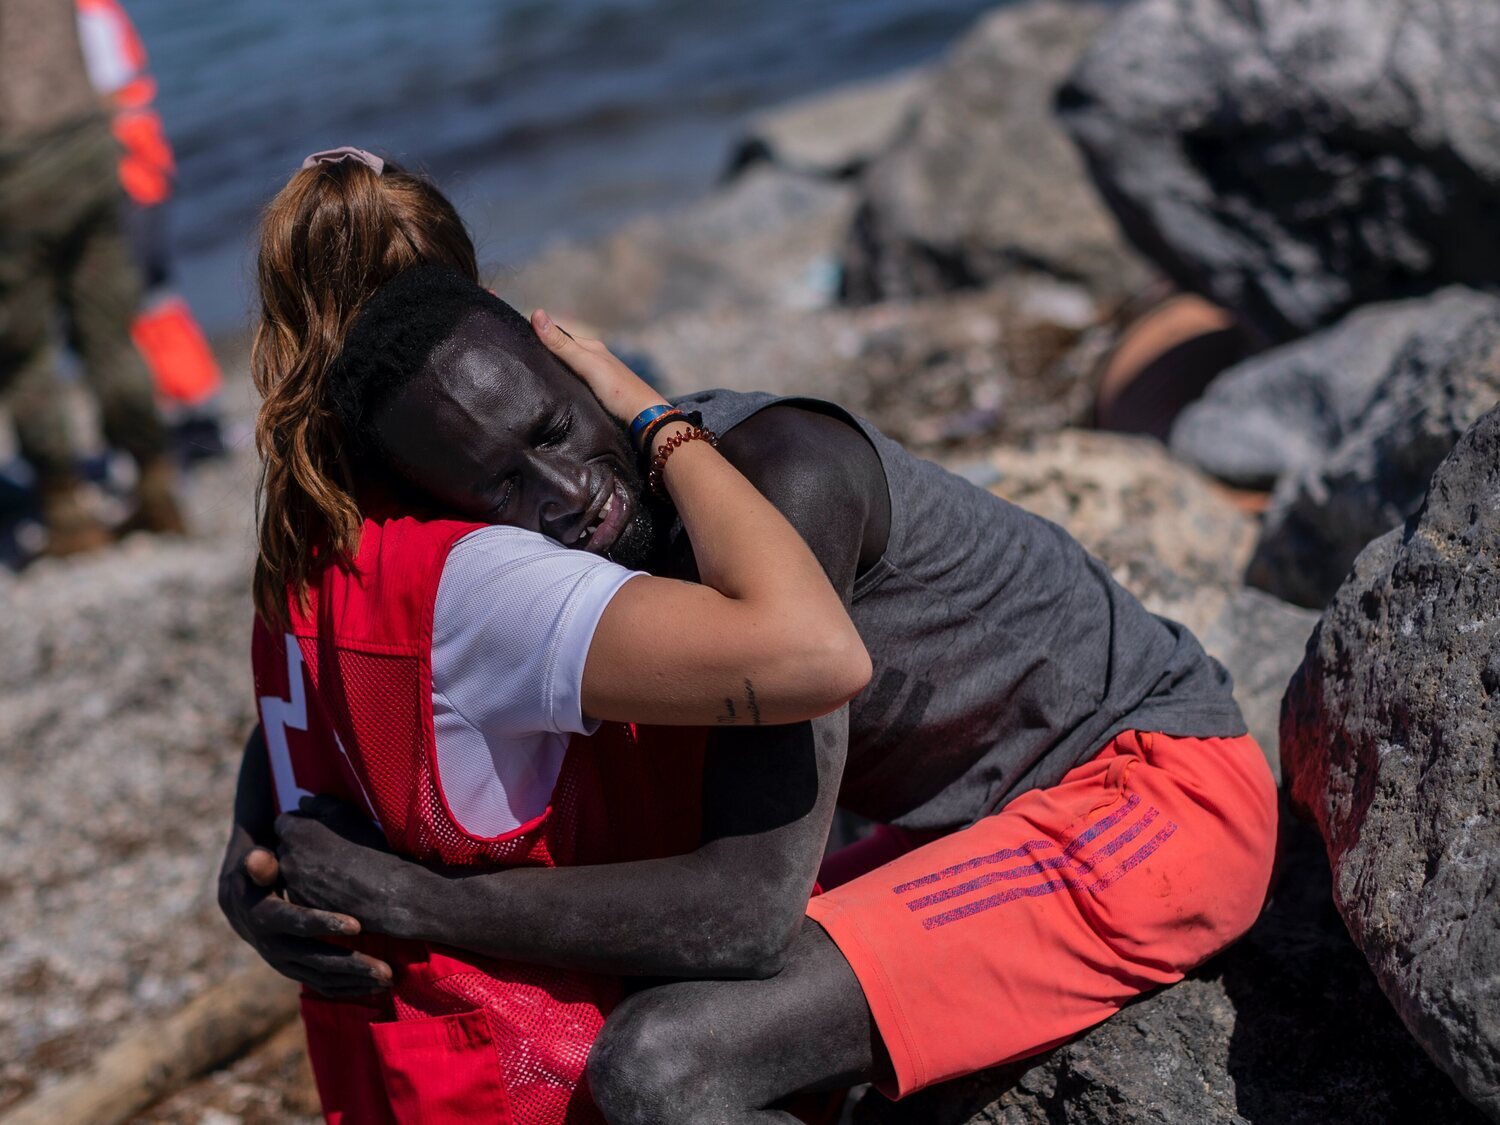 El caso de Abdou, inmigrante que conmovió por su abrazo a la voluntaria de Cruz Roja, es rechazado por Europa